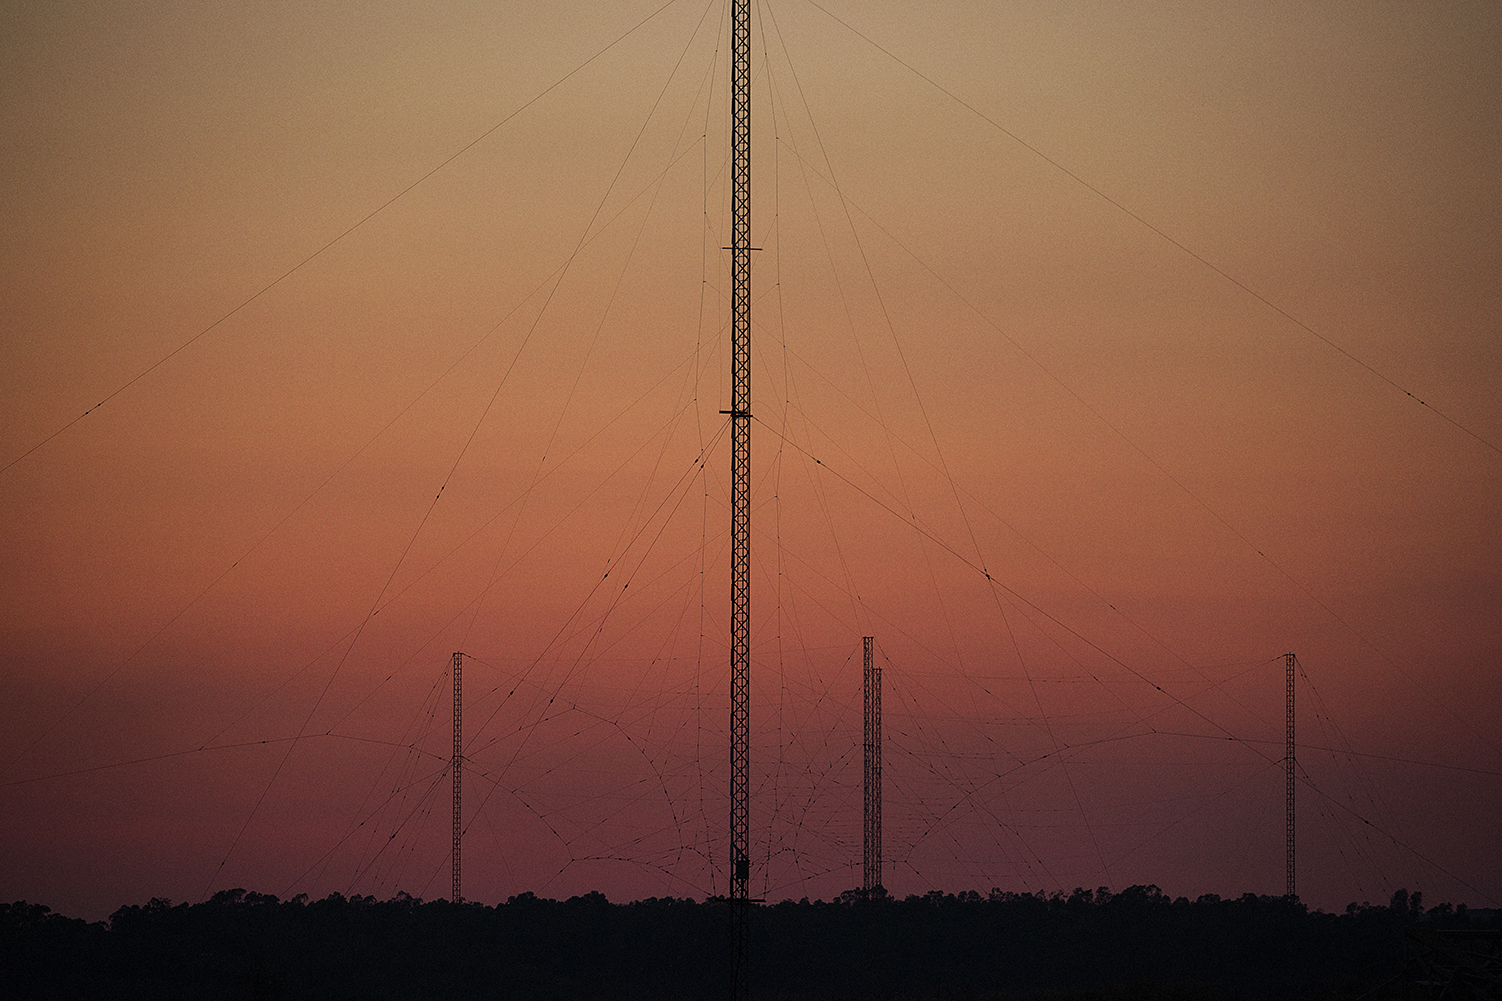  Niscemi (CL), Luglio 2017. L’intricato reticolato di antenne del Naval Radio Transmitter Facility è attivo dal 1991 all’interno della riserva naturale Sughereta di Niscemi. La stazione radio dispone di un sistema di trasmettitori e antenne a bassa f